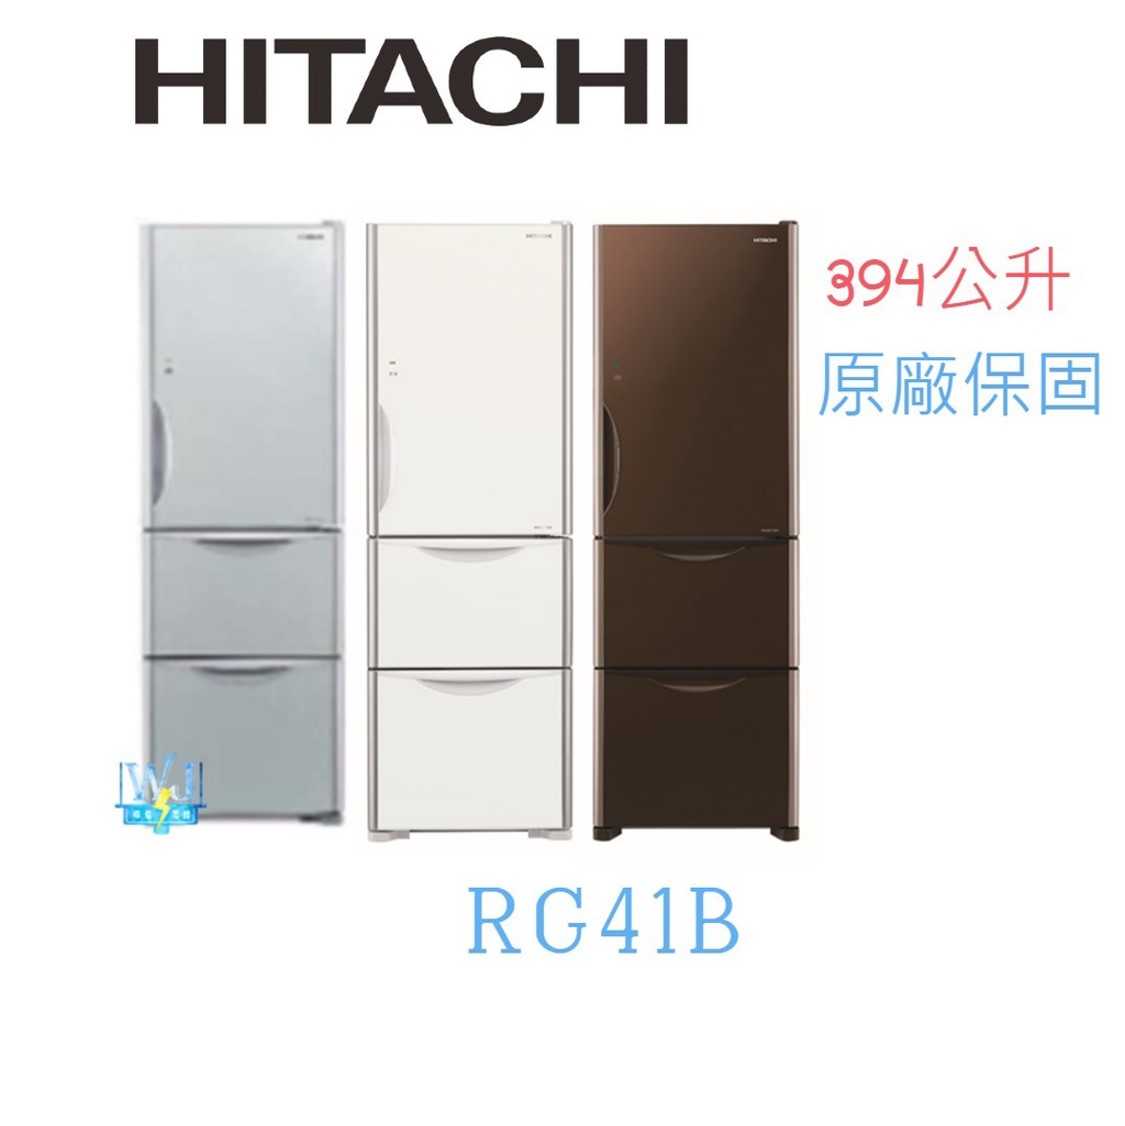 有現貨【送基本安裝】HITACHI 日立 R-G41B 三門冰箱 RG41B 1級能源效率 電冰箱 取代RG41A